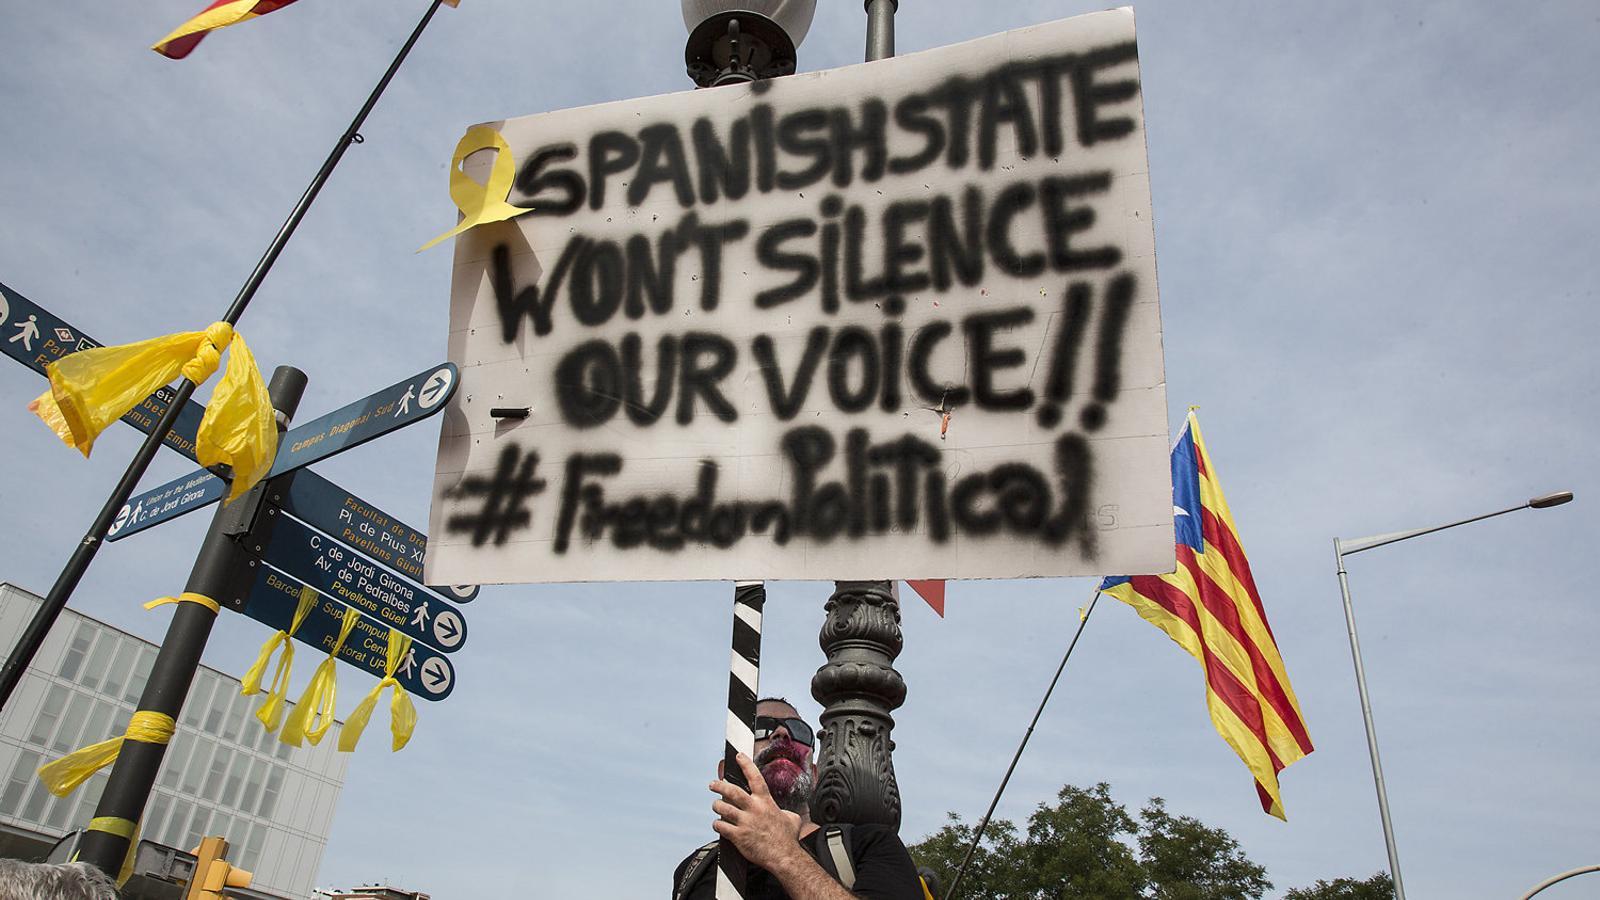 Participant dâ€™una manifestaciÃ³ independentista a Barcelona amb un cartell per la llibertat dels presos en anglÃ¨s. / CRISTINA CALDERER